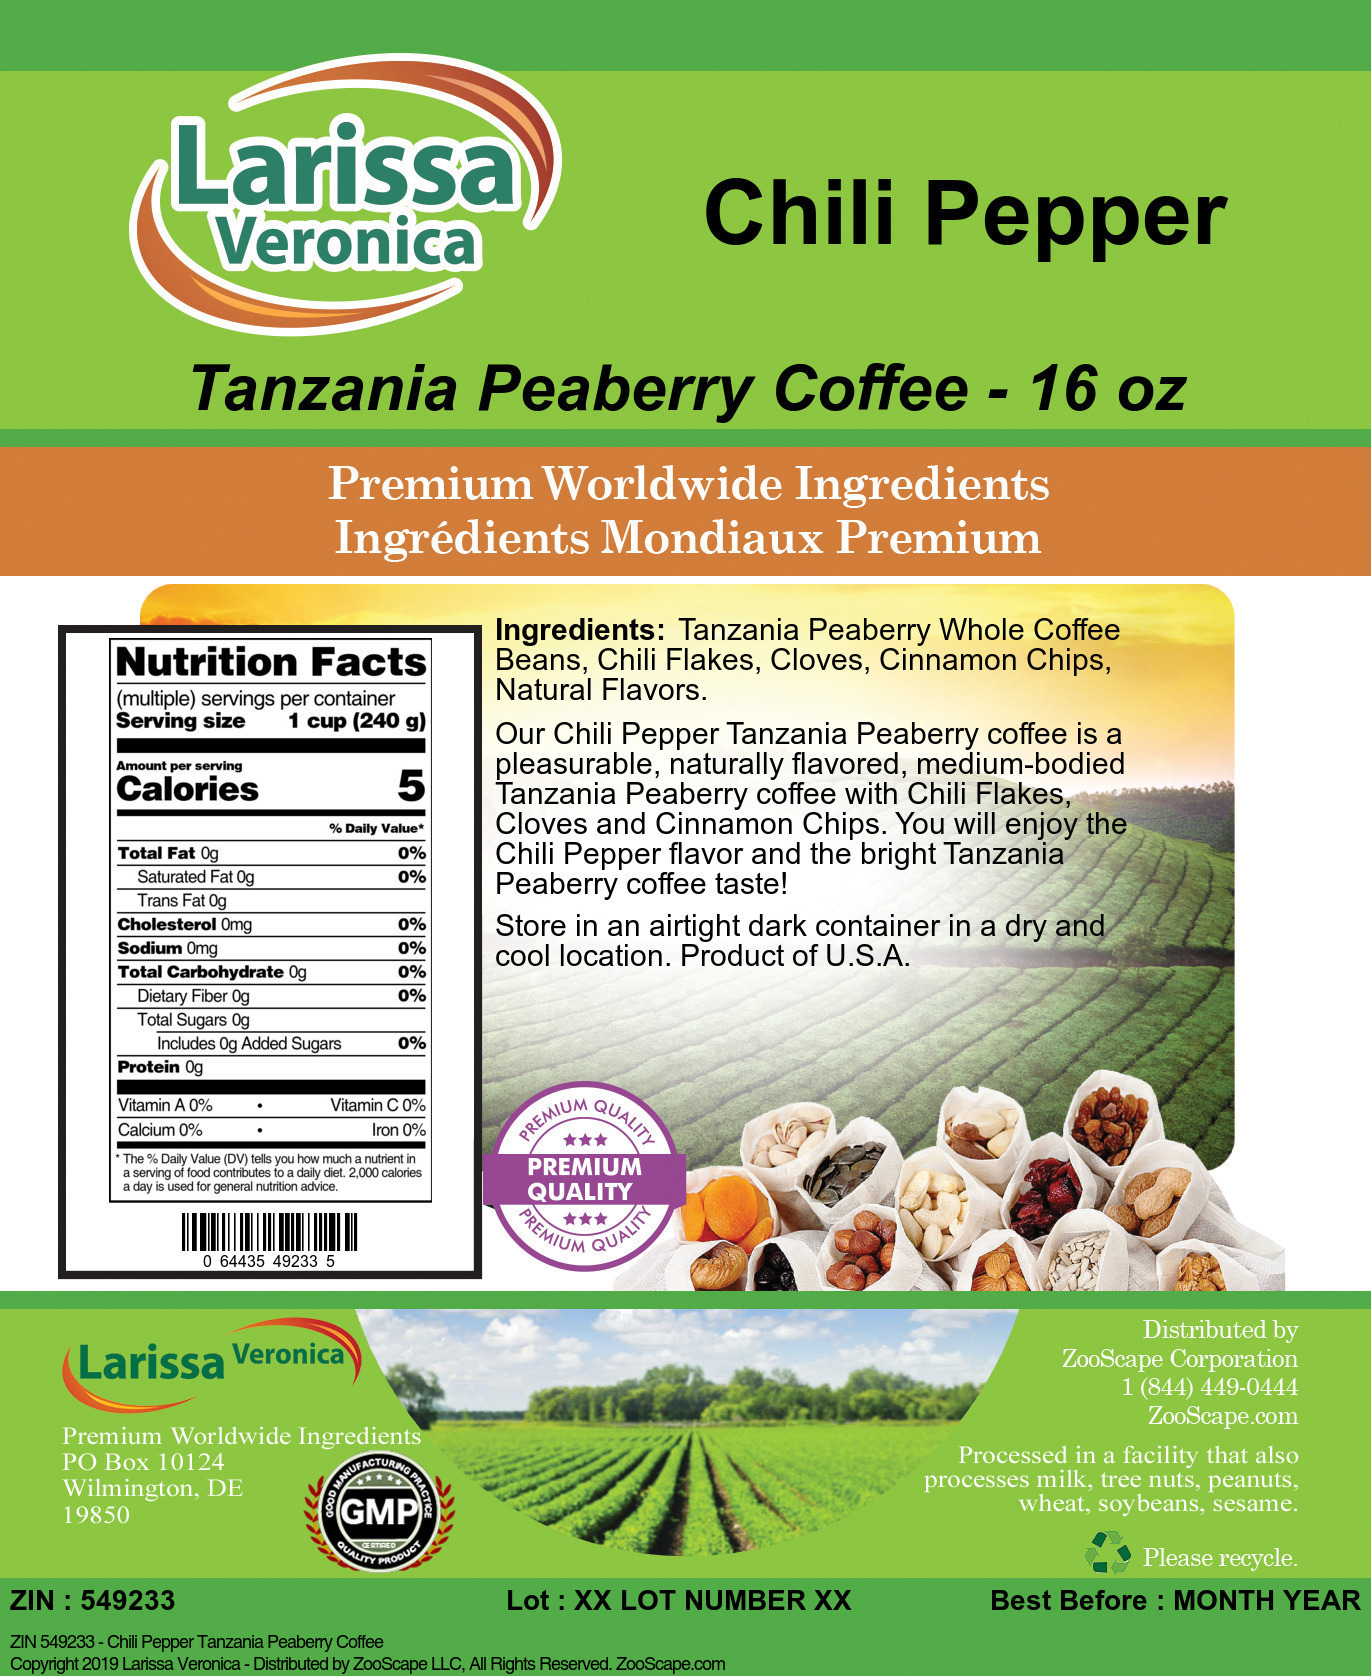 Chili Pepper Tanzania Peaberry Coffee - Label